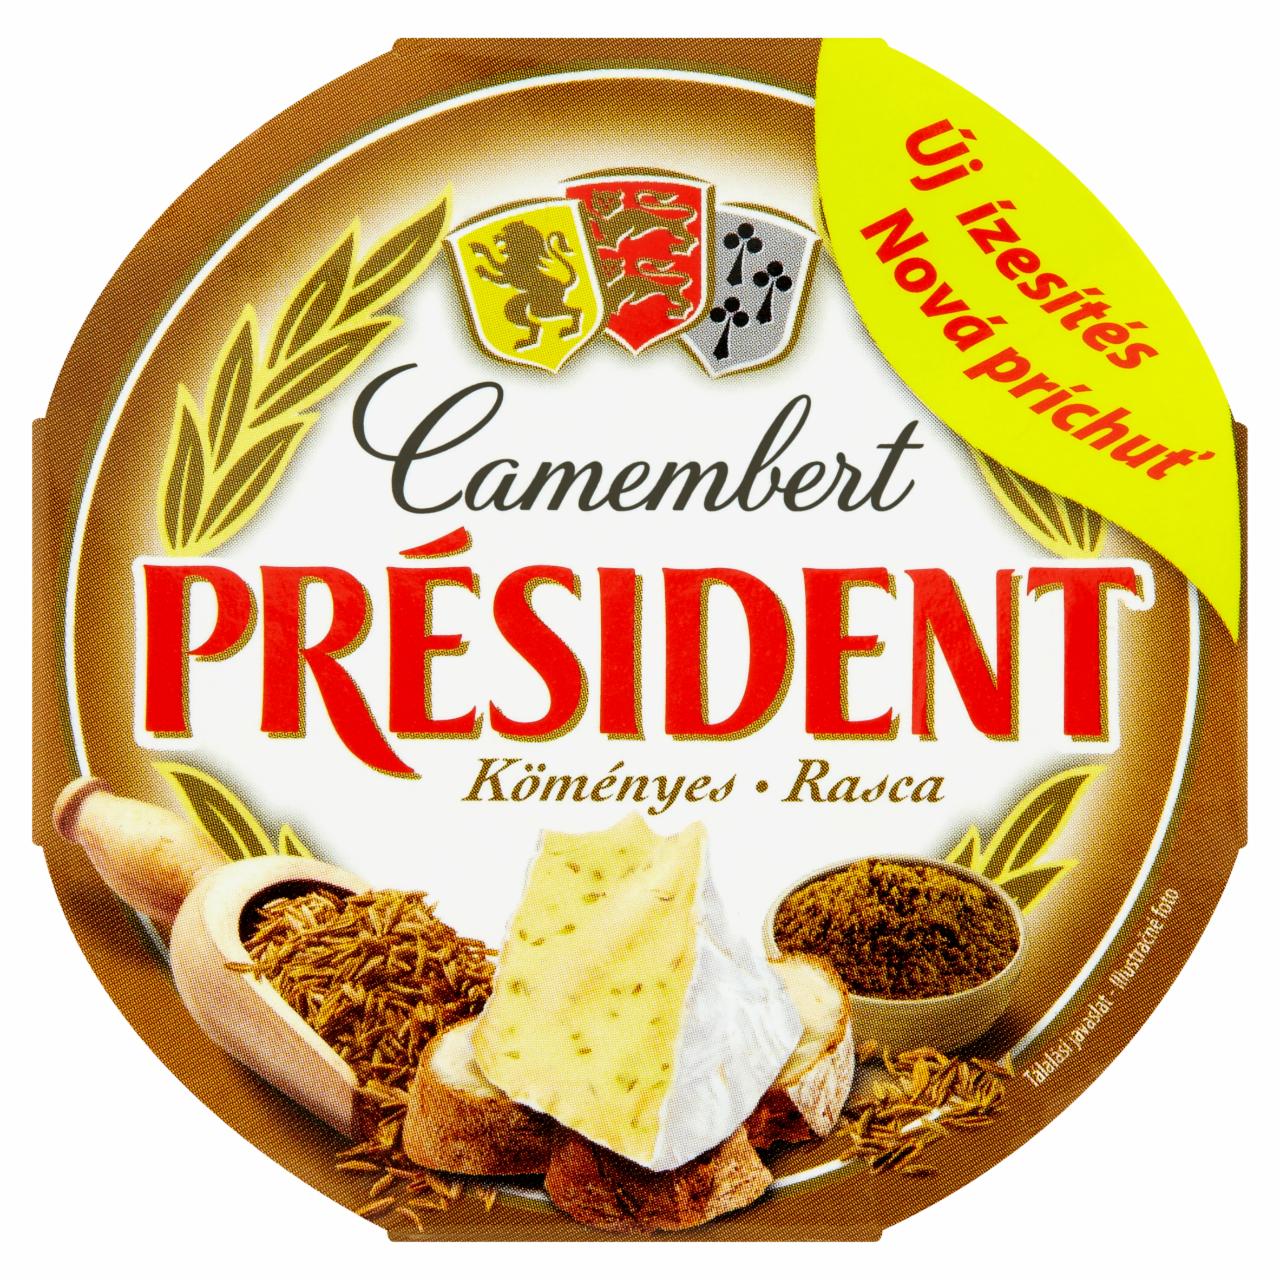 Képek - Président köményes camembert sajt 120 g